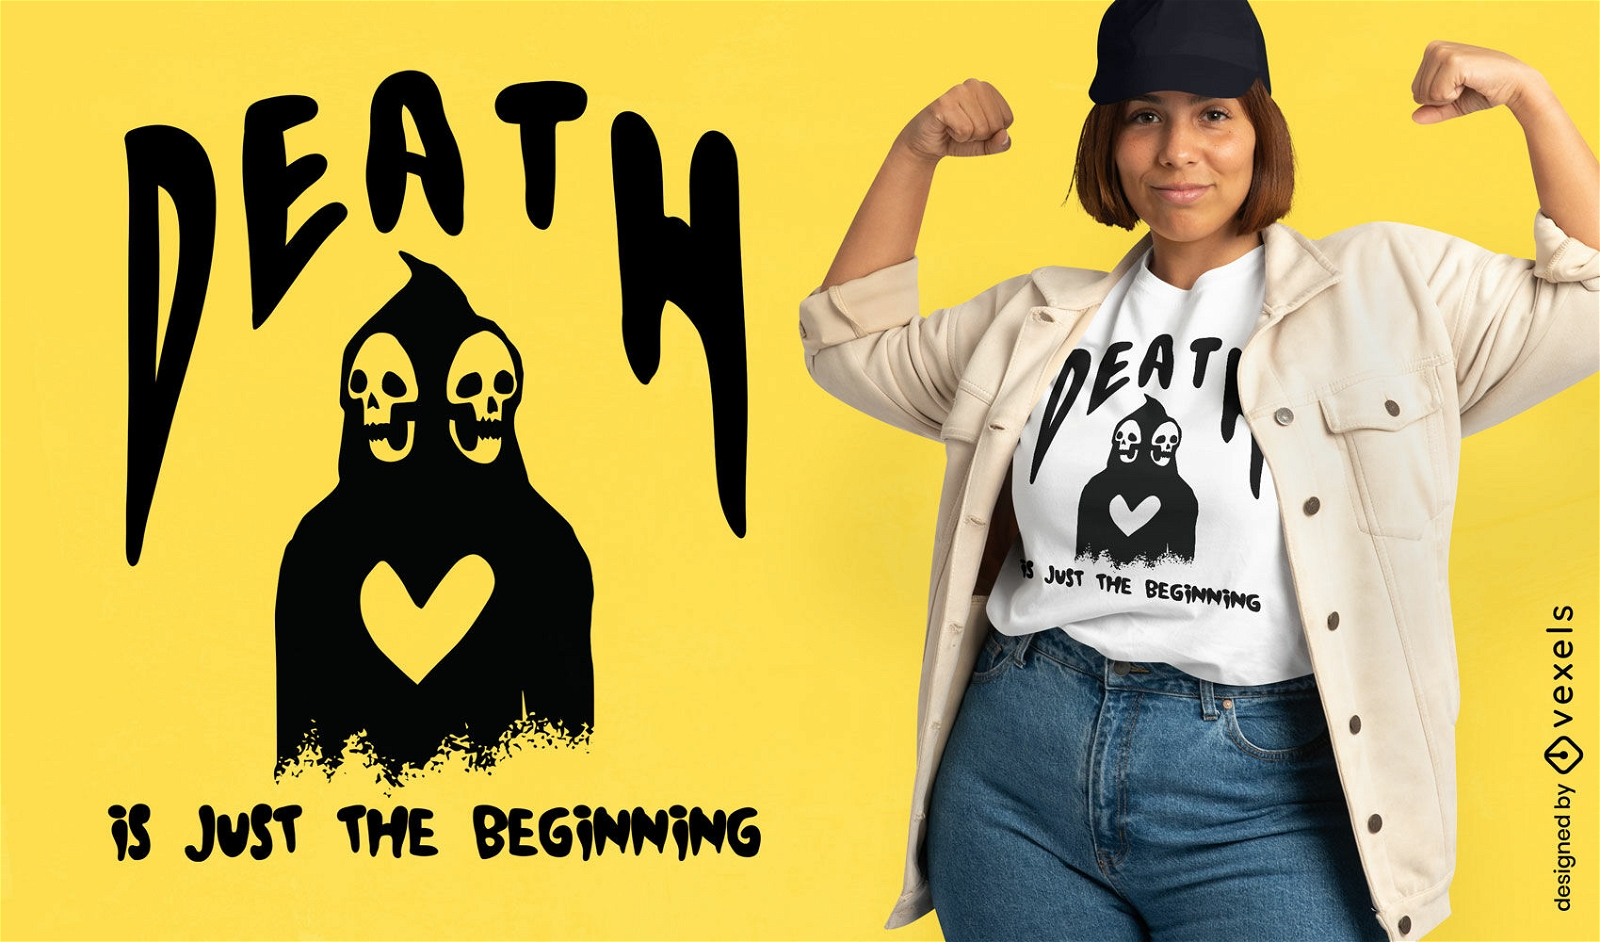 Death just the beginning t-shirt design